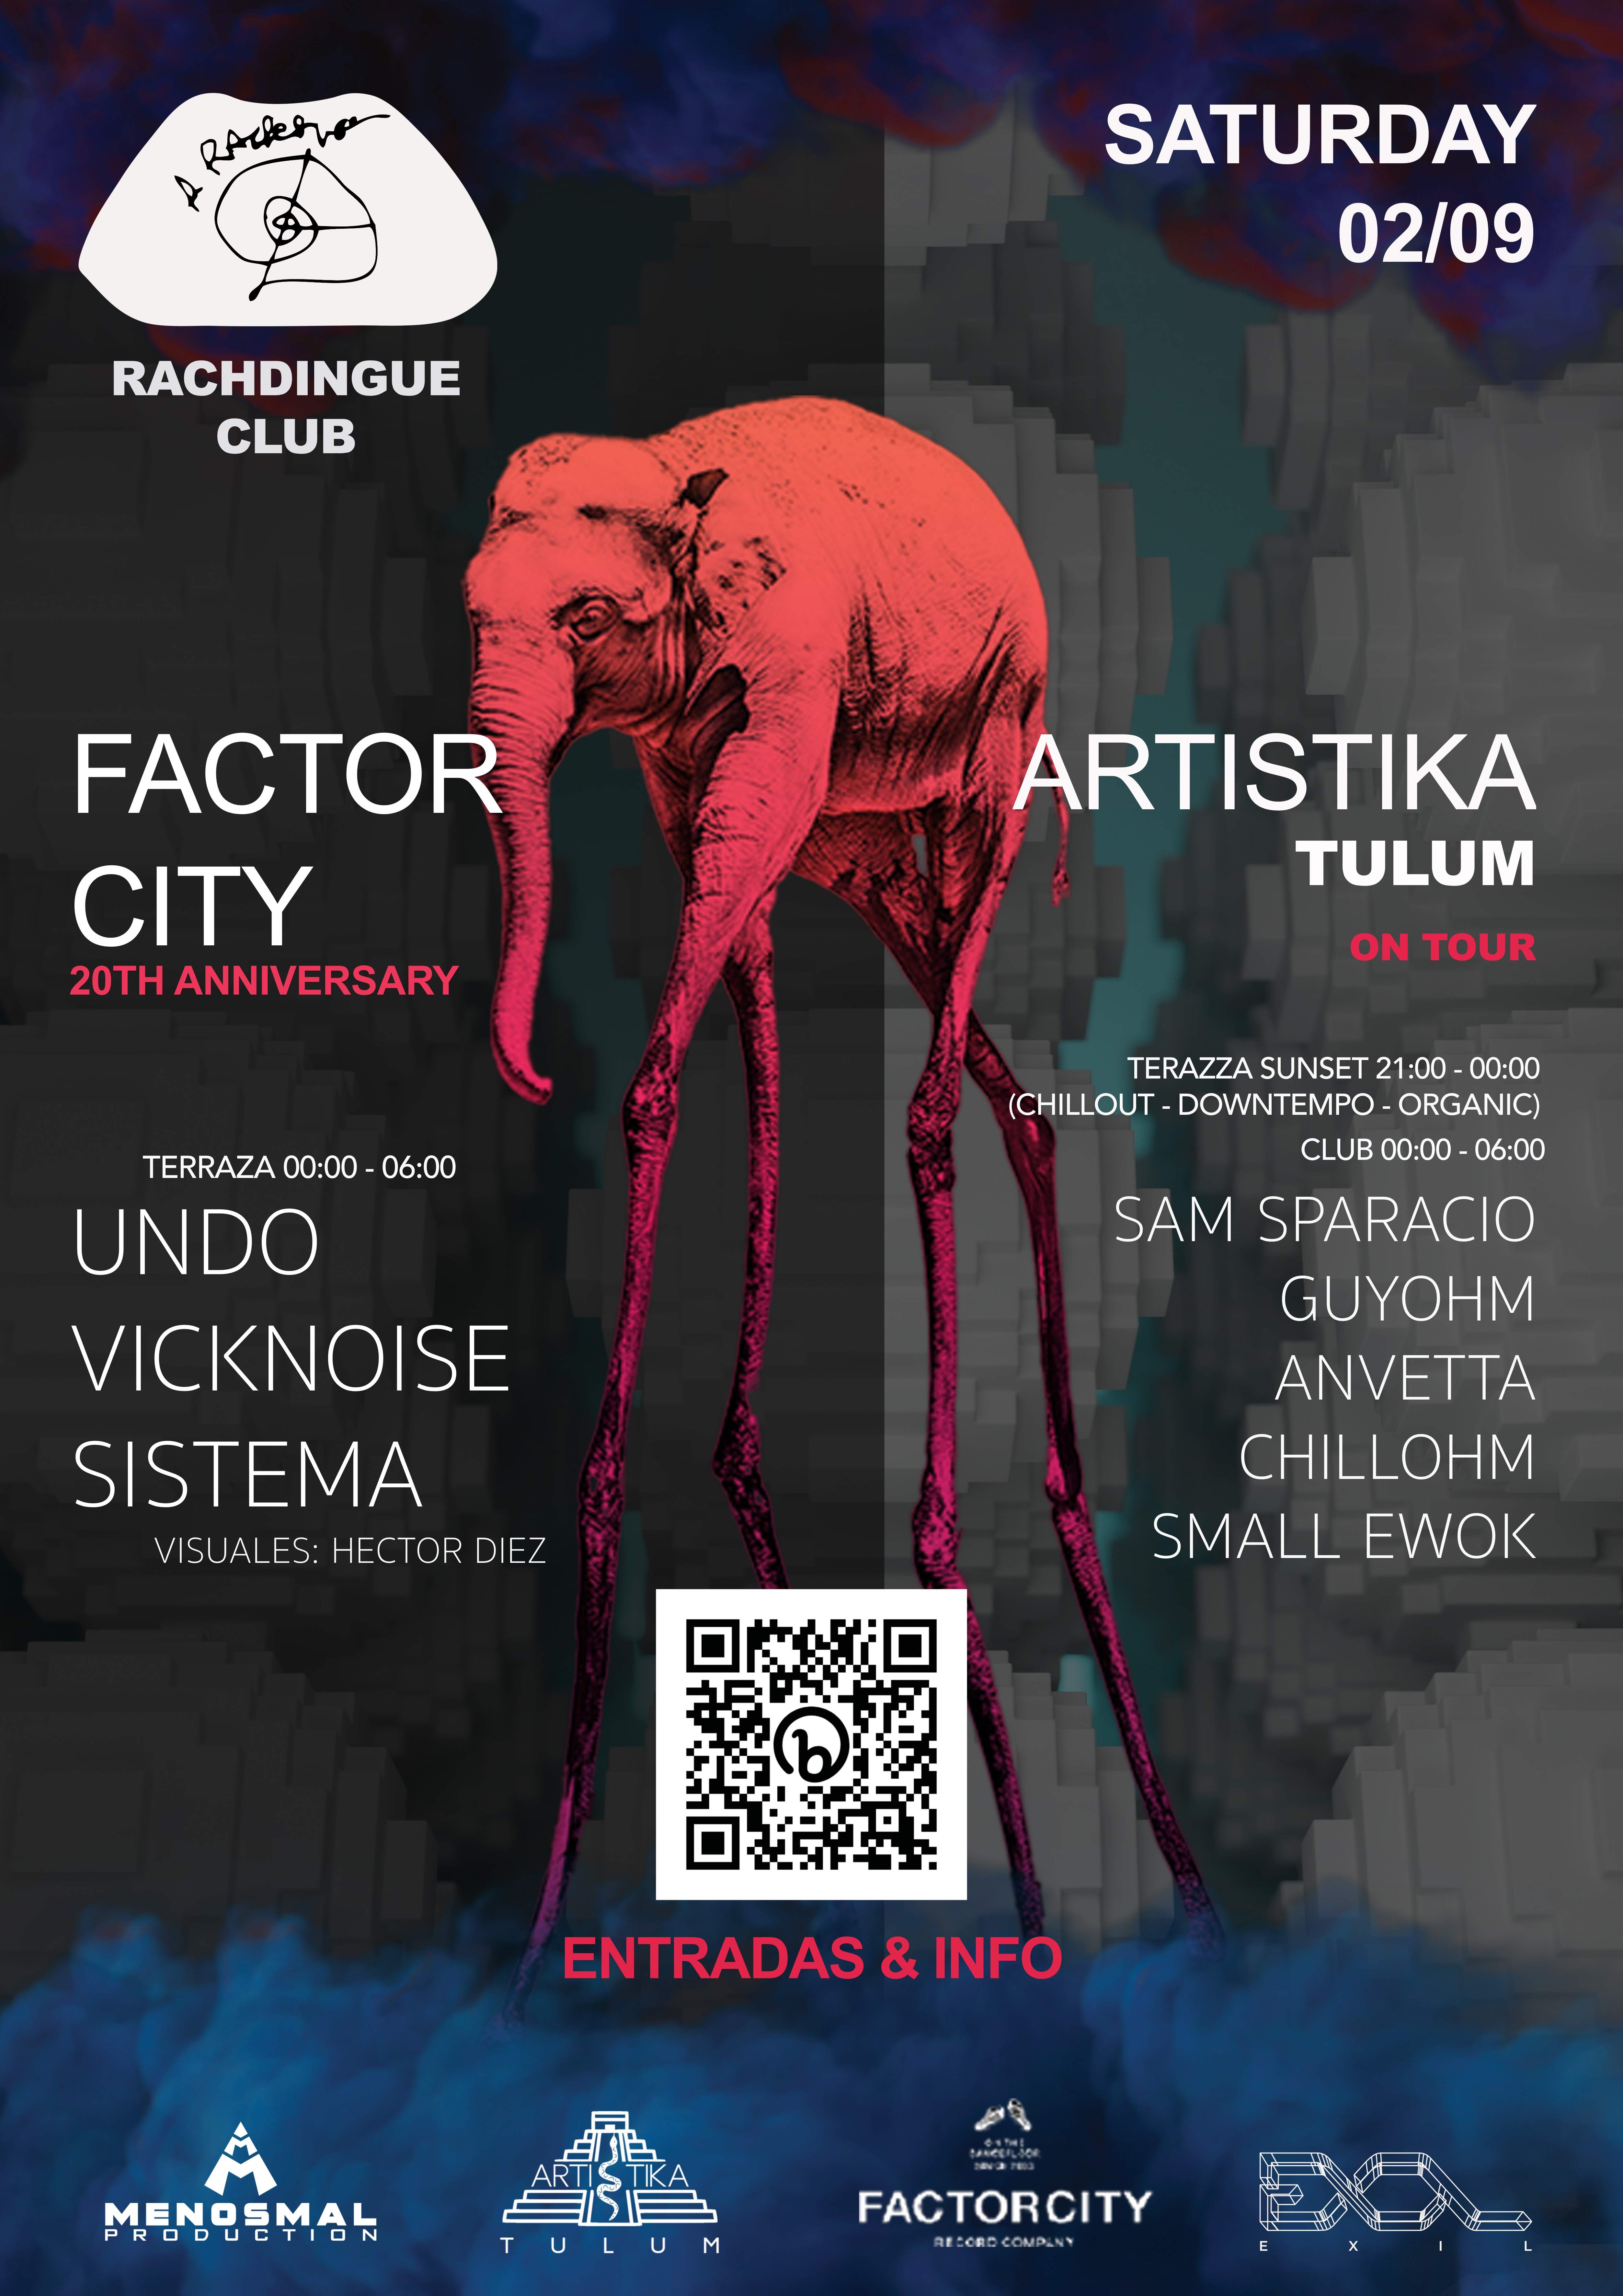 Factor City 20th Anniversary + Artistika - Página trasera